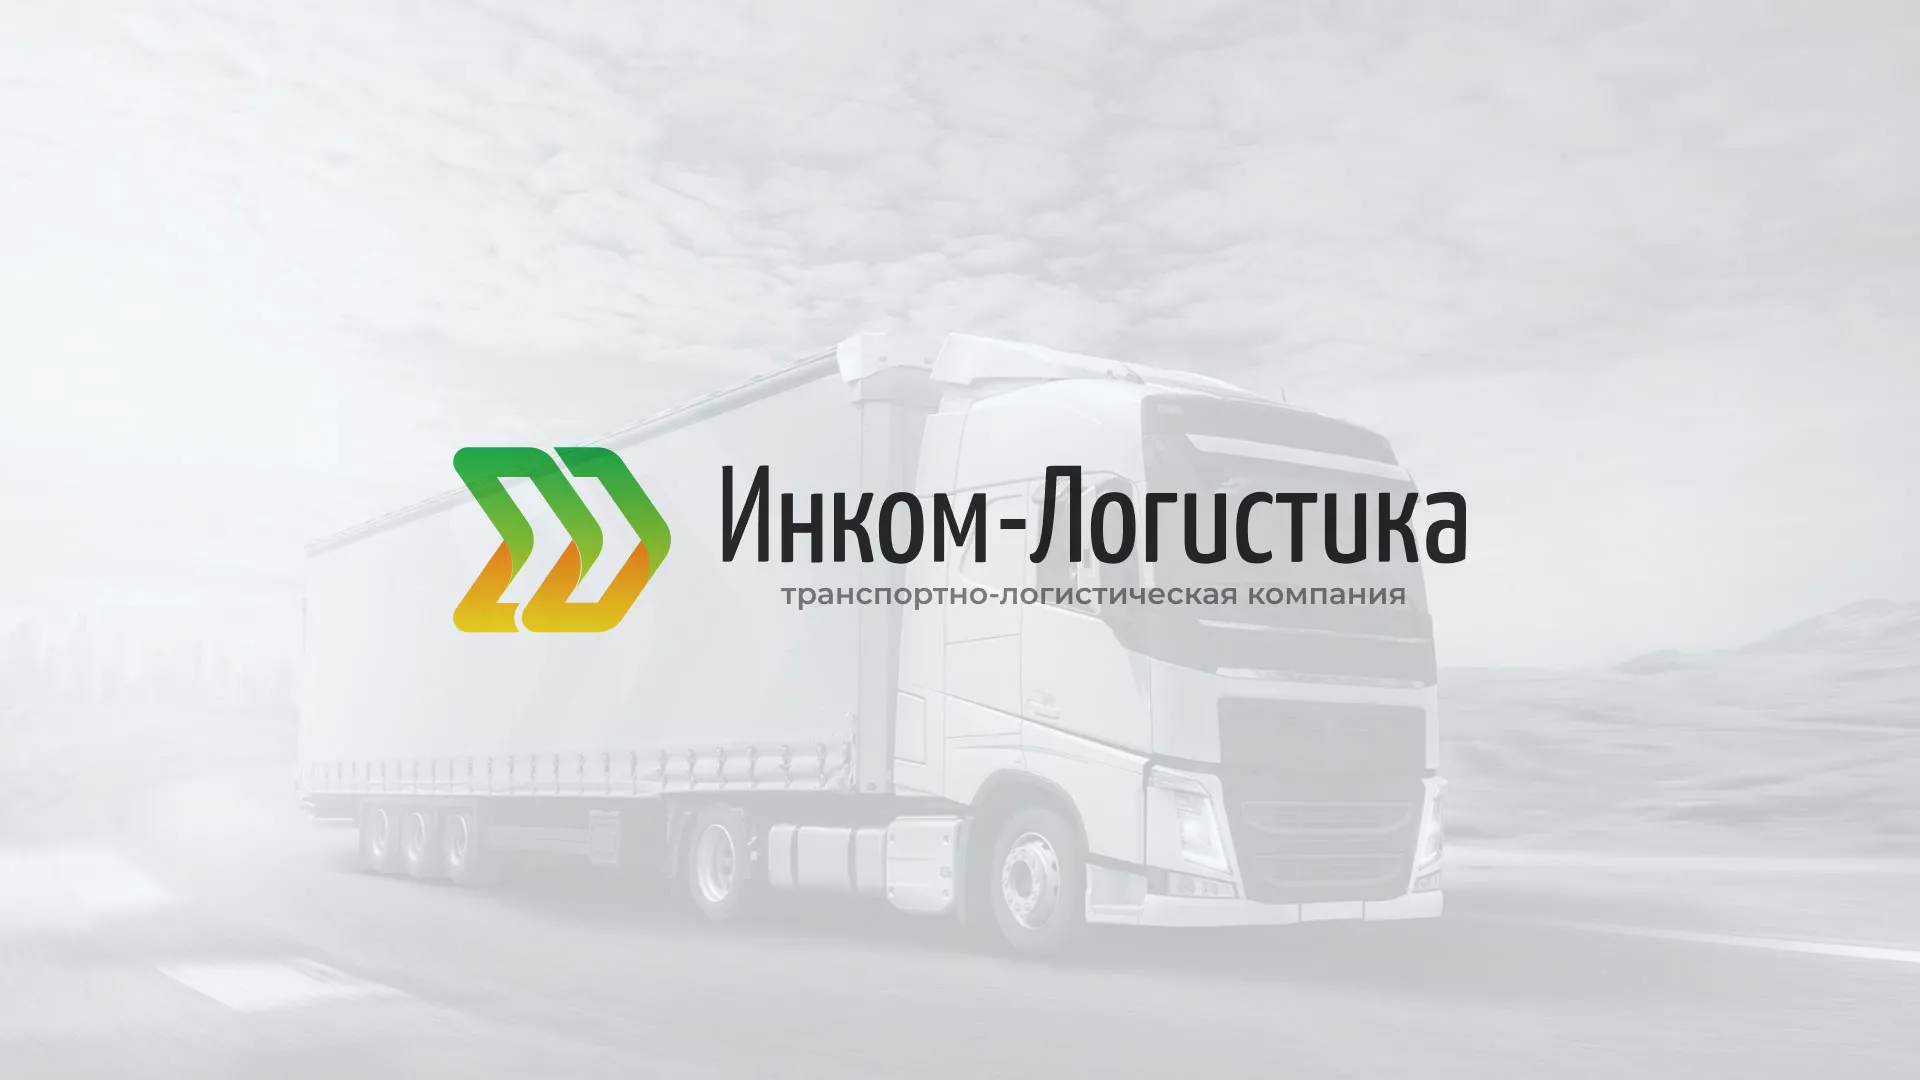 Разработка логотипа и сайта компании «Инком-Логистика» в Шадринске